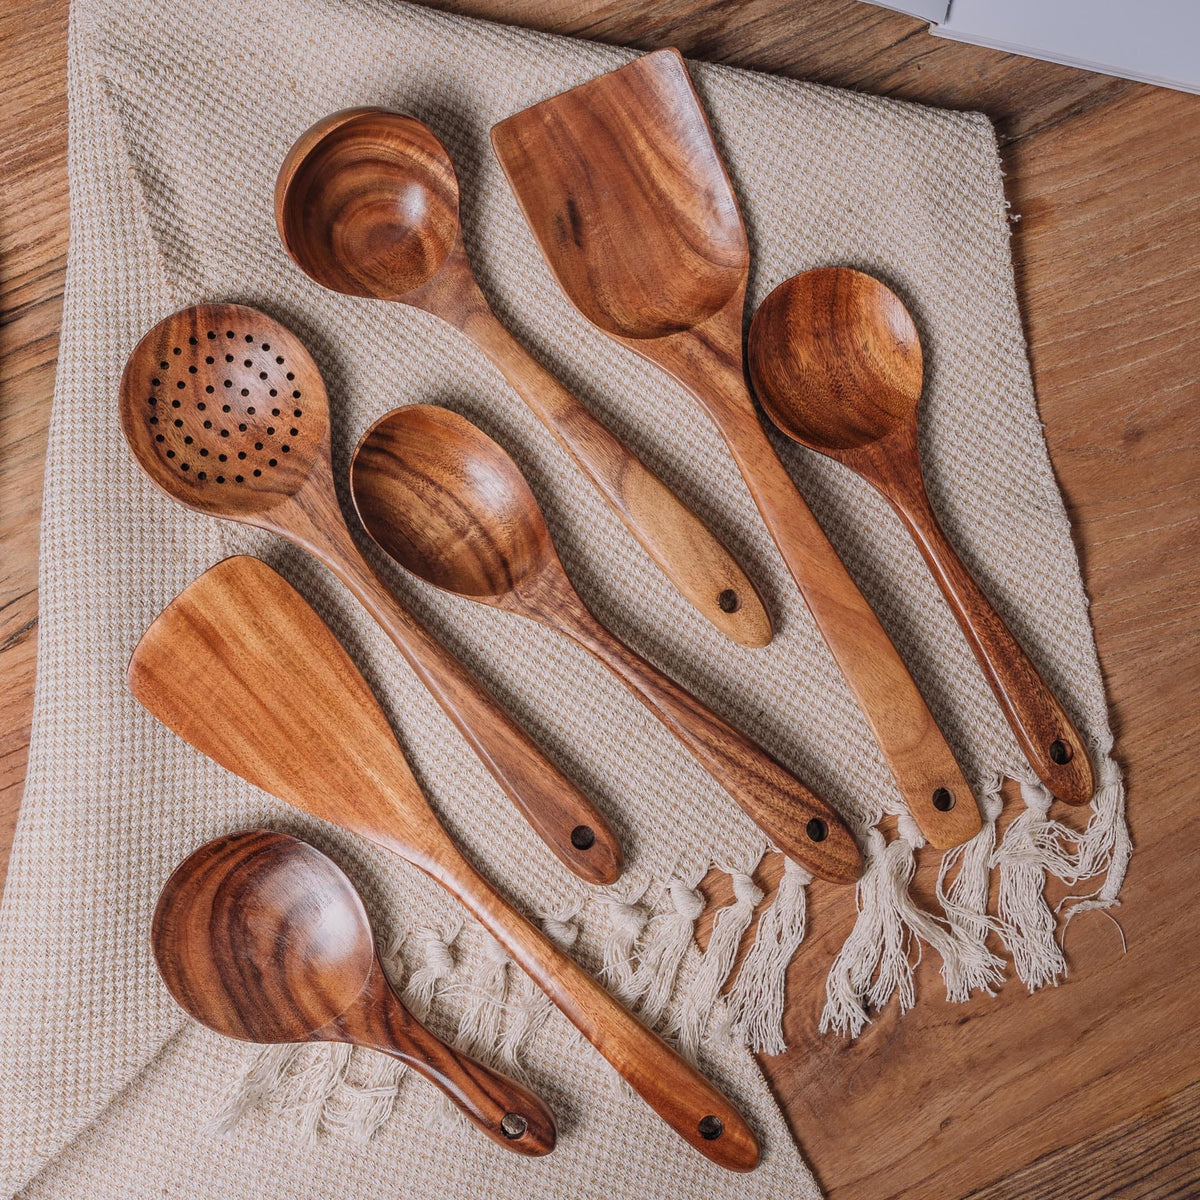 Wooden Kitchen Utensils Set - Wood Cooking Spoons - Wooden